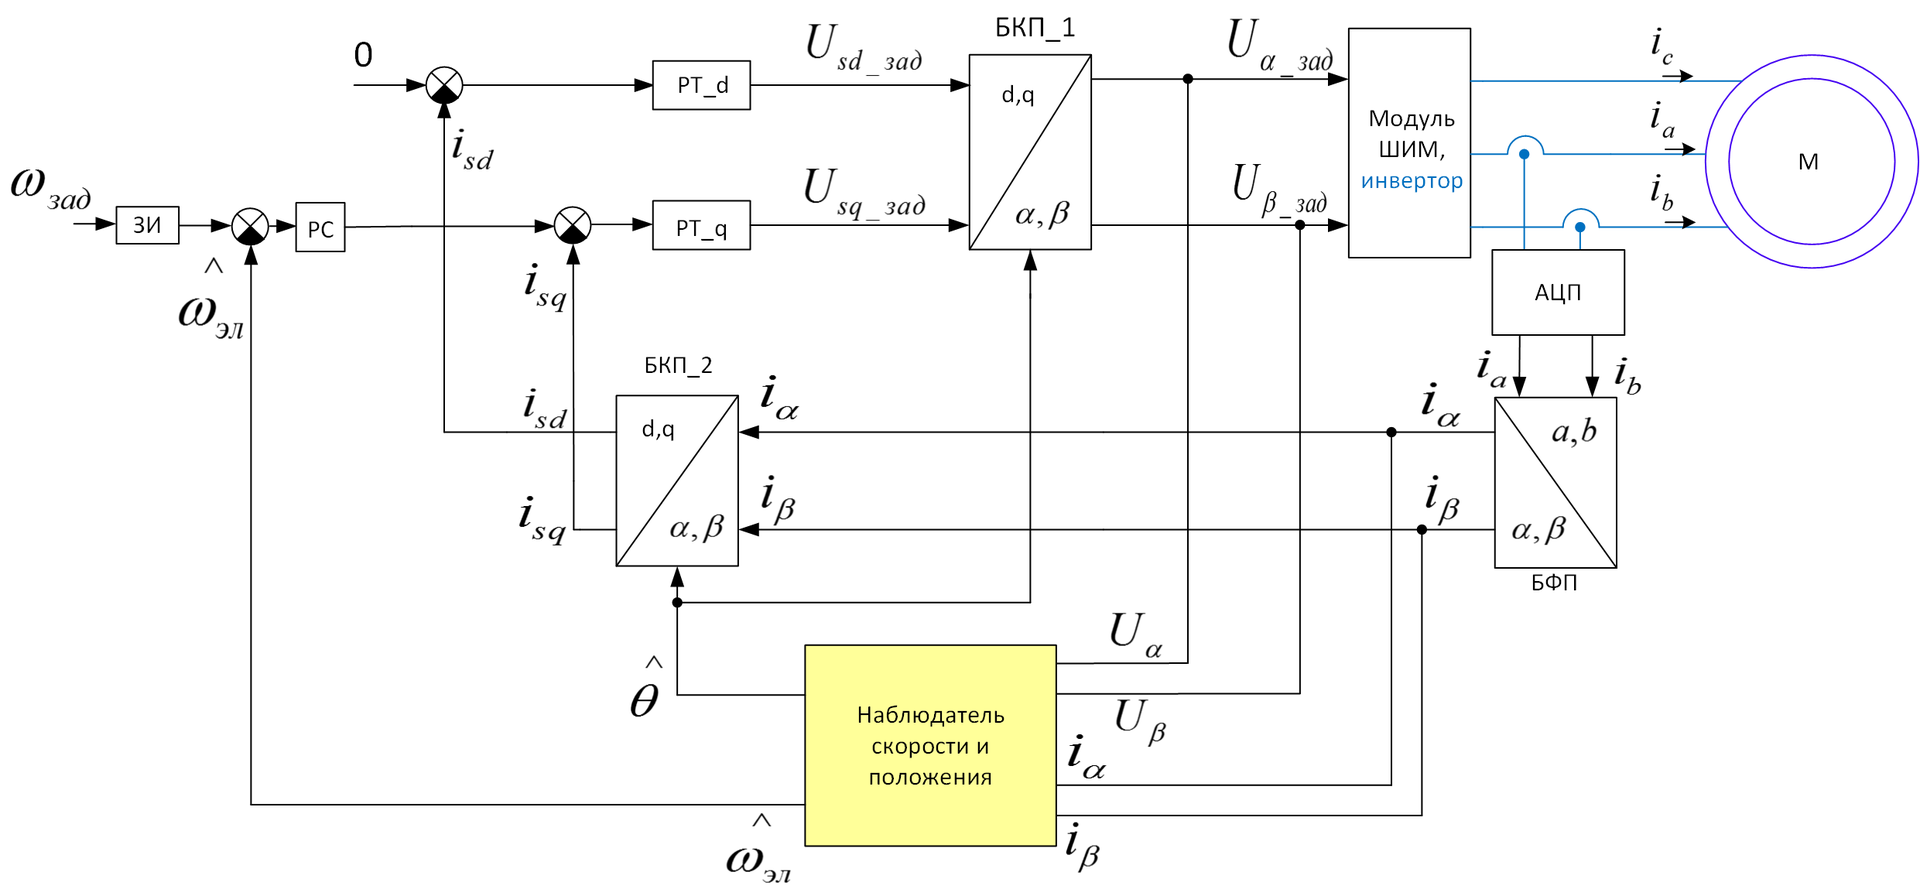 Способы отладки ПО микроконтроллеров в электроприводе - 6